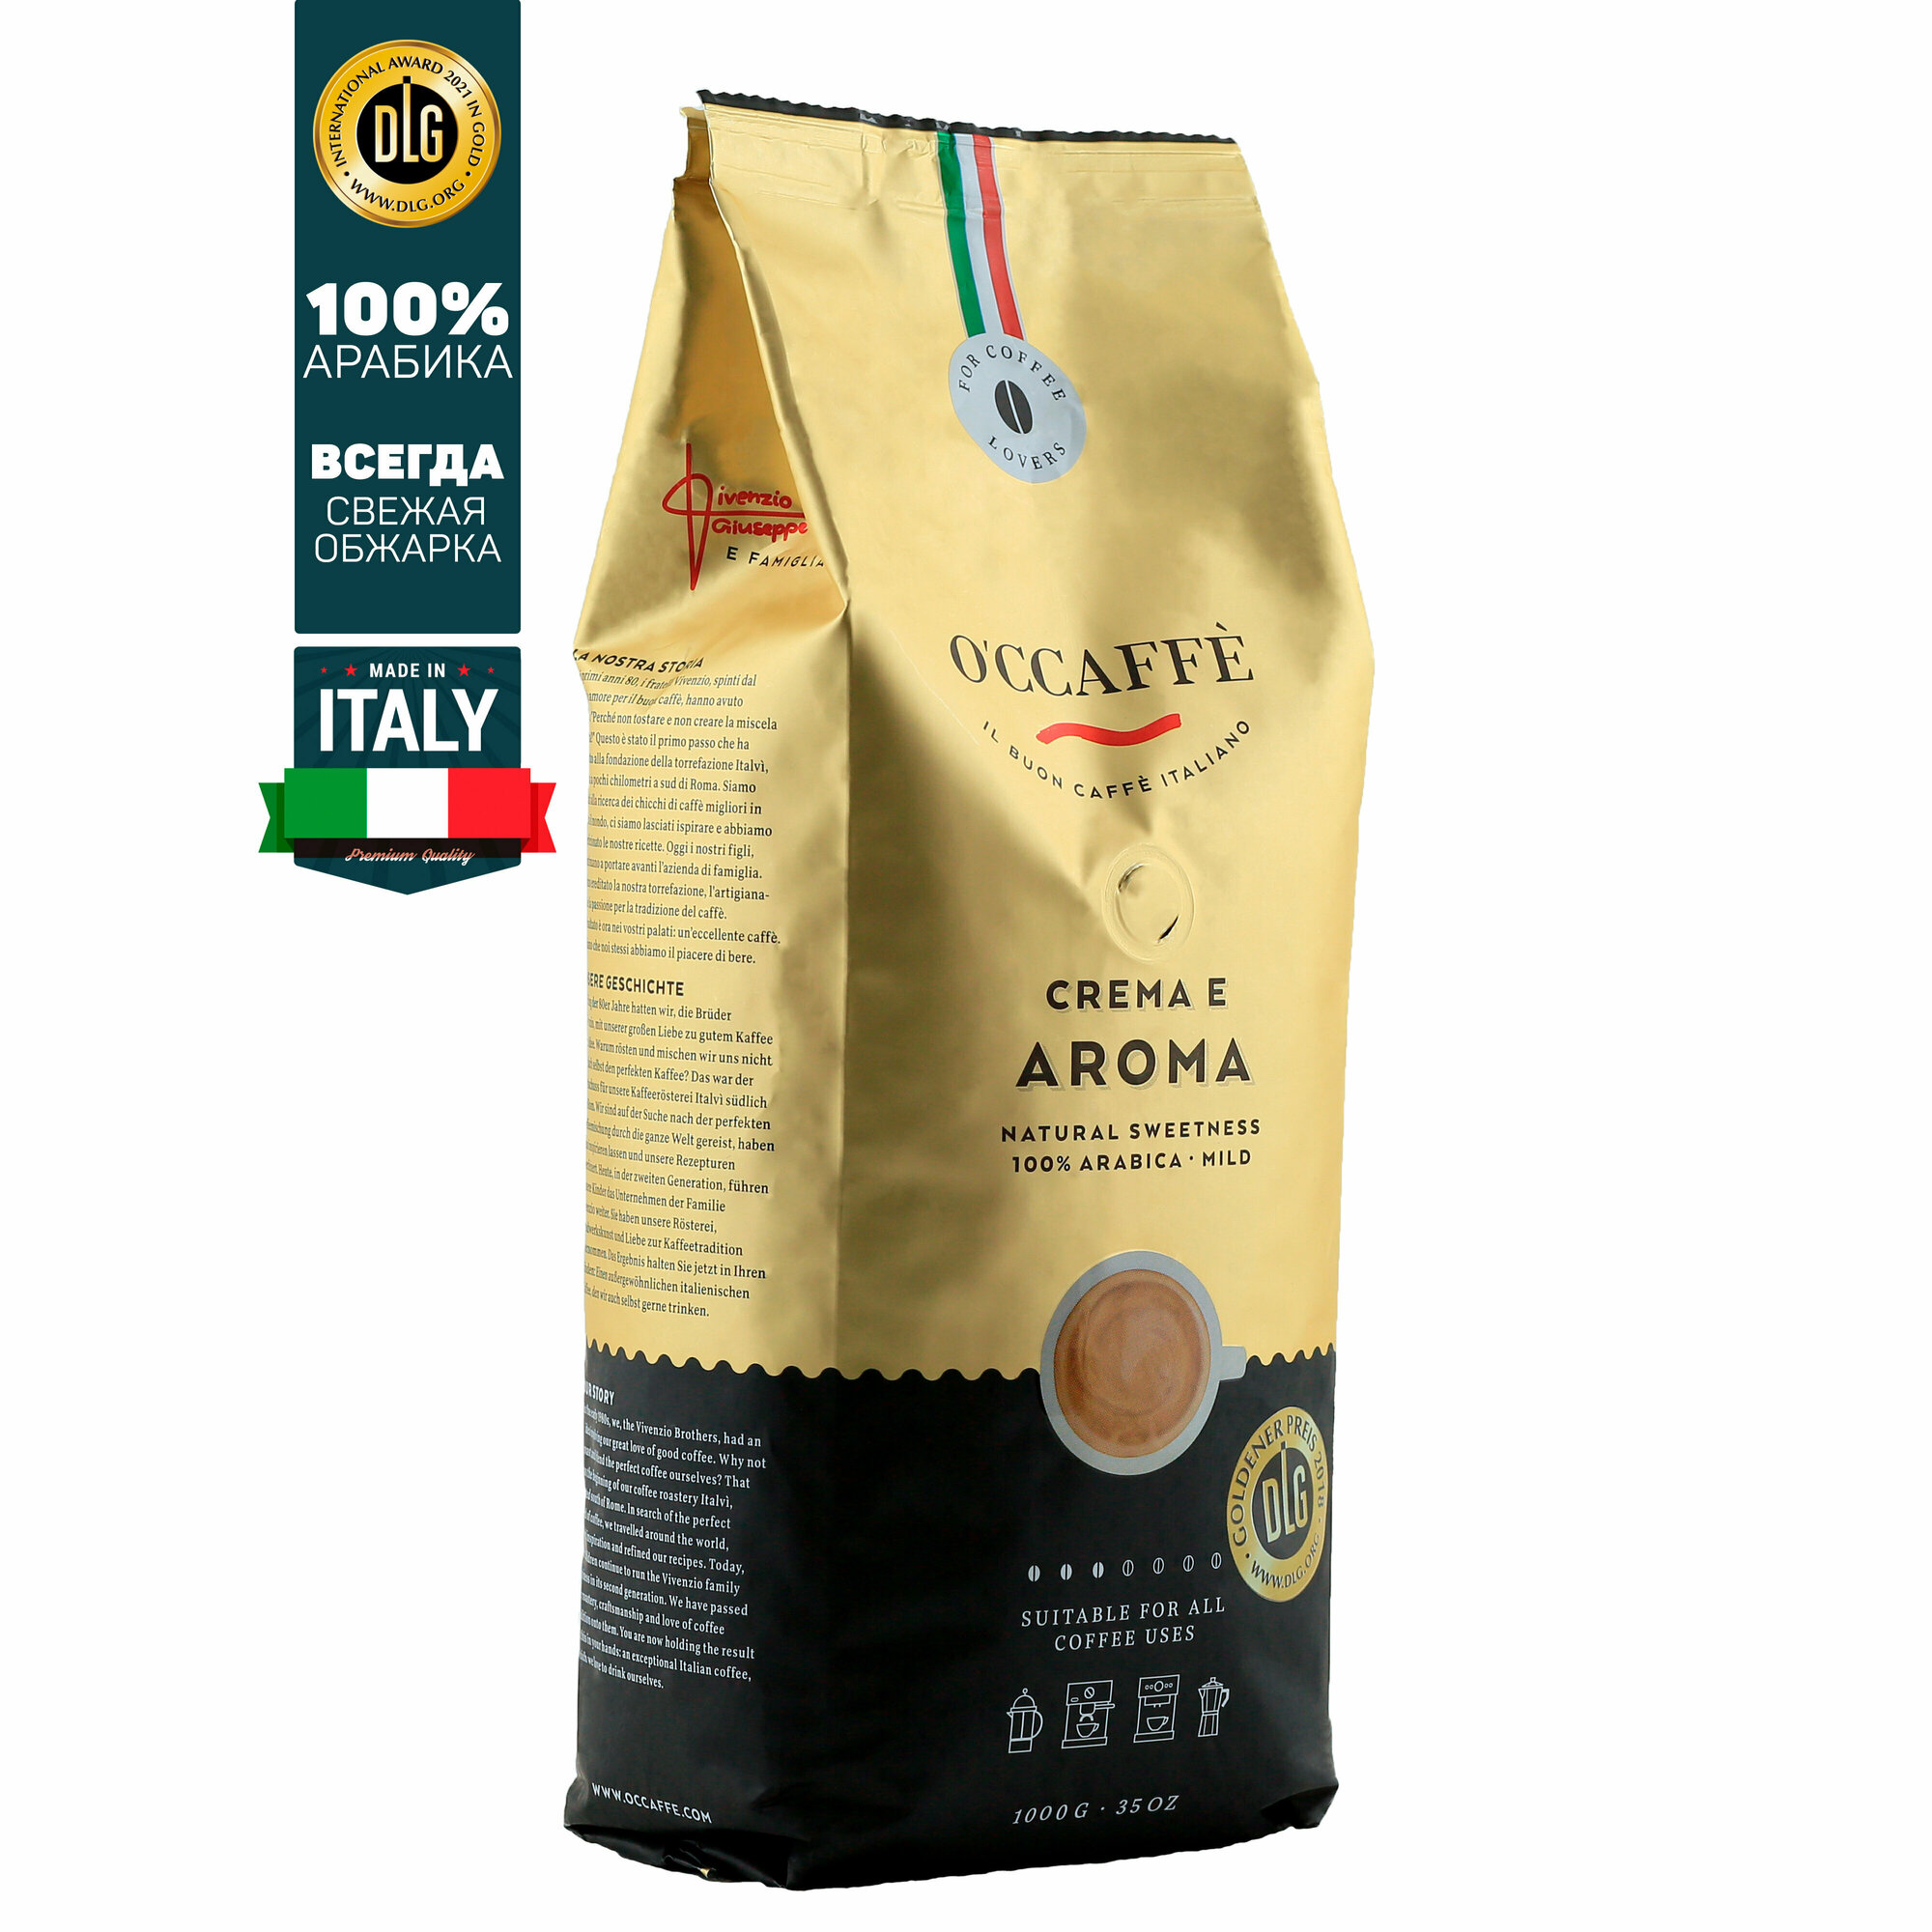 Кофе в зернах O'CCAFFE Crema e Aroma 100% Arabica, 1 кг (Италия)